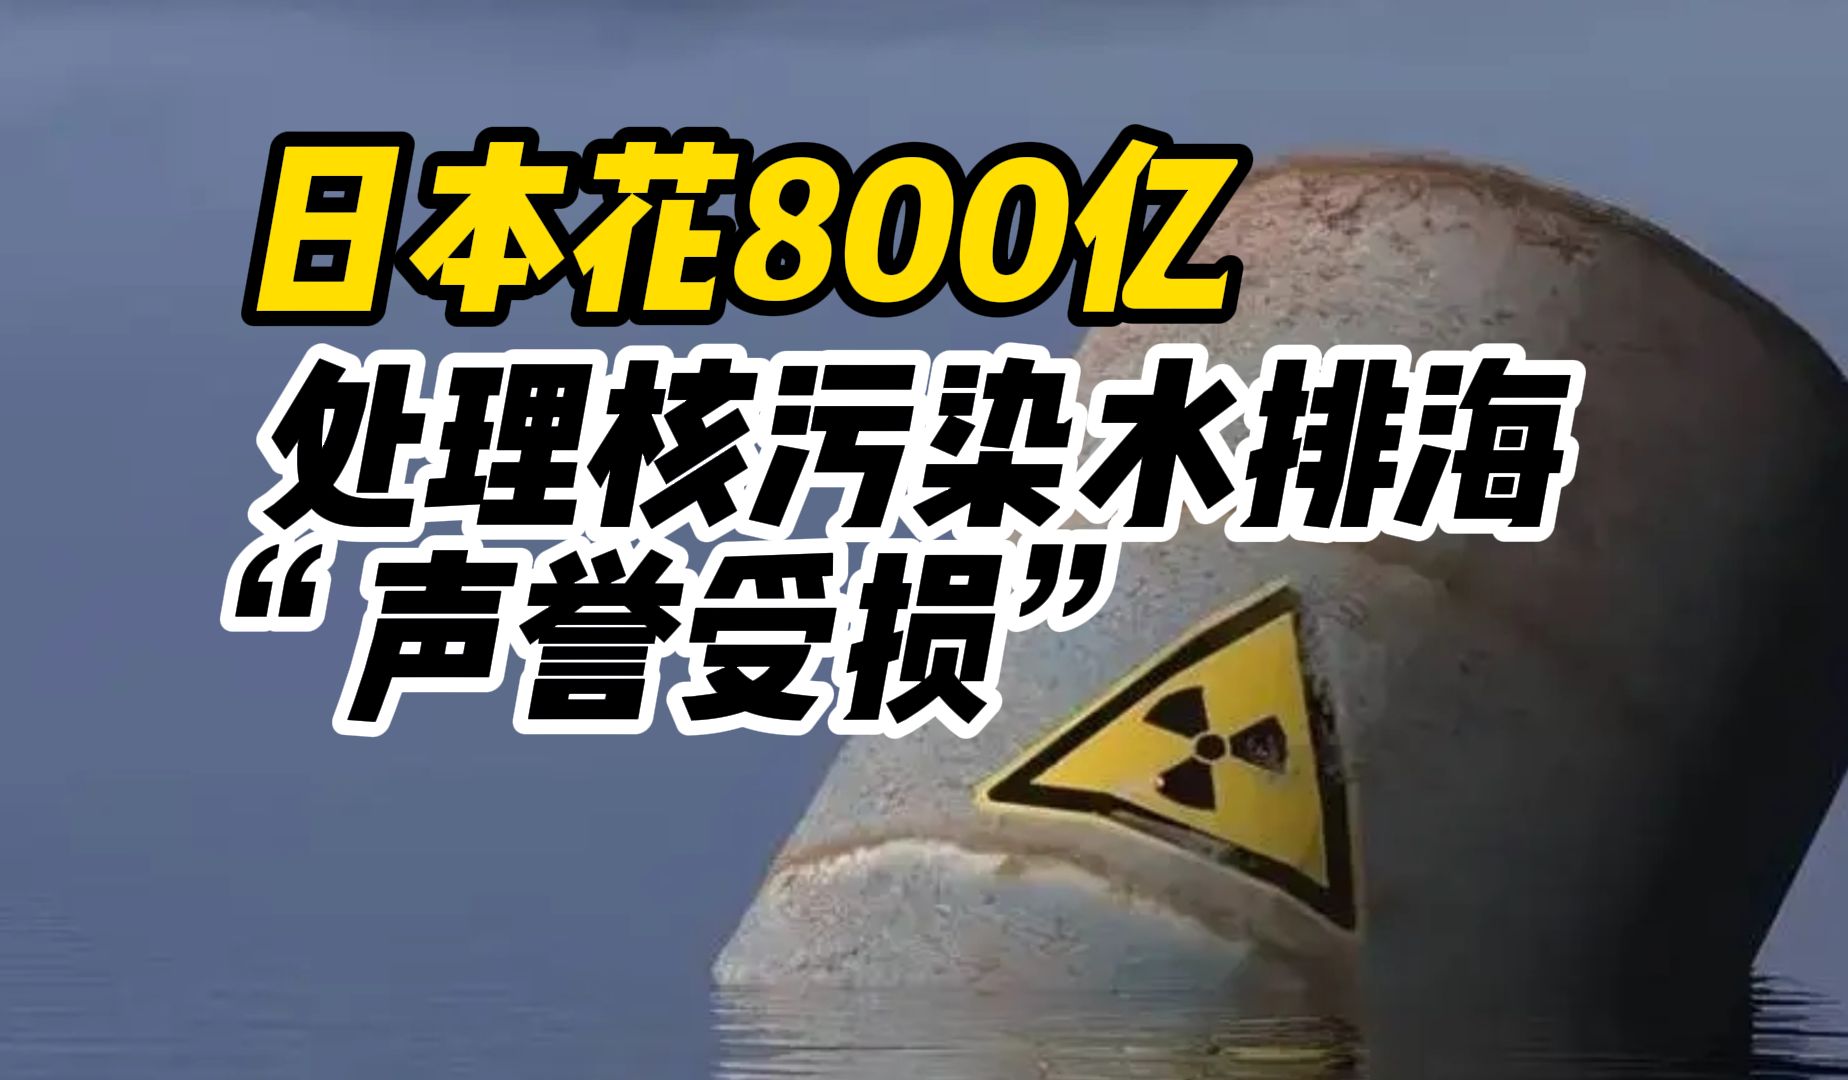 福岛议员称日本政府花800亿处理核污染水排海“声誉受损”